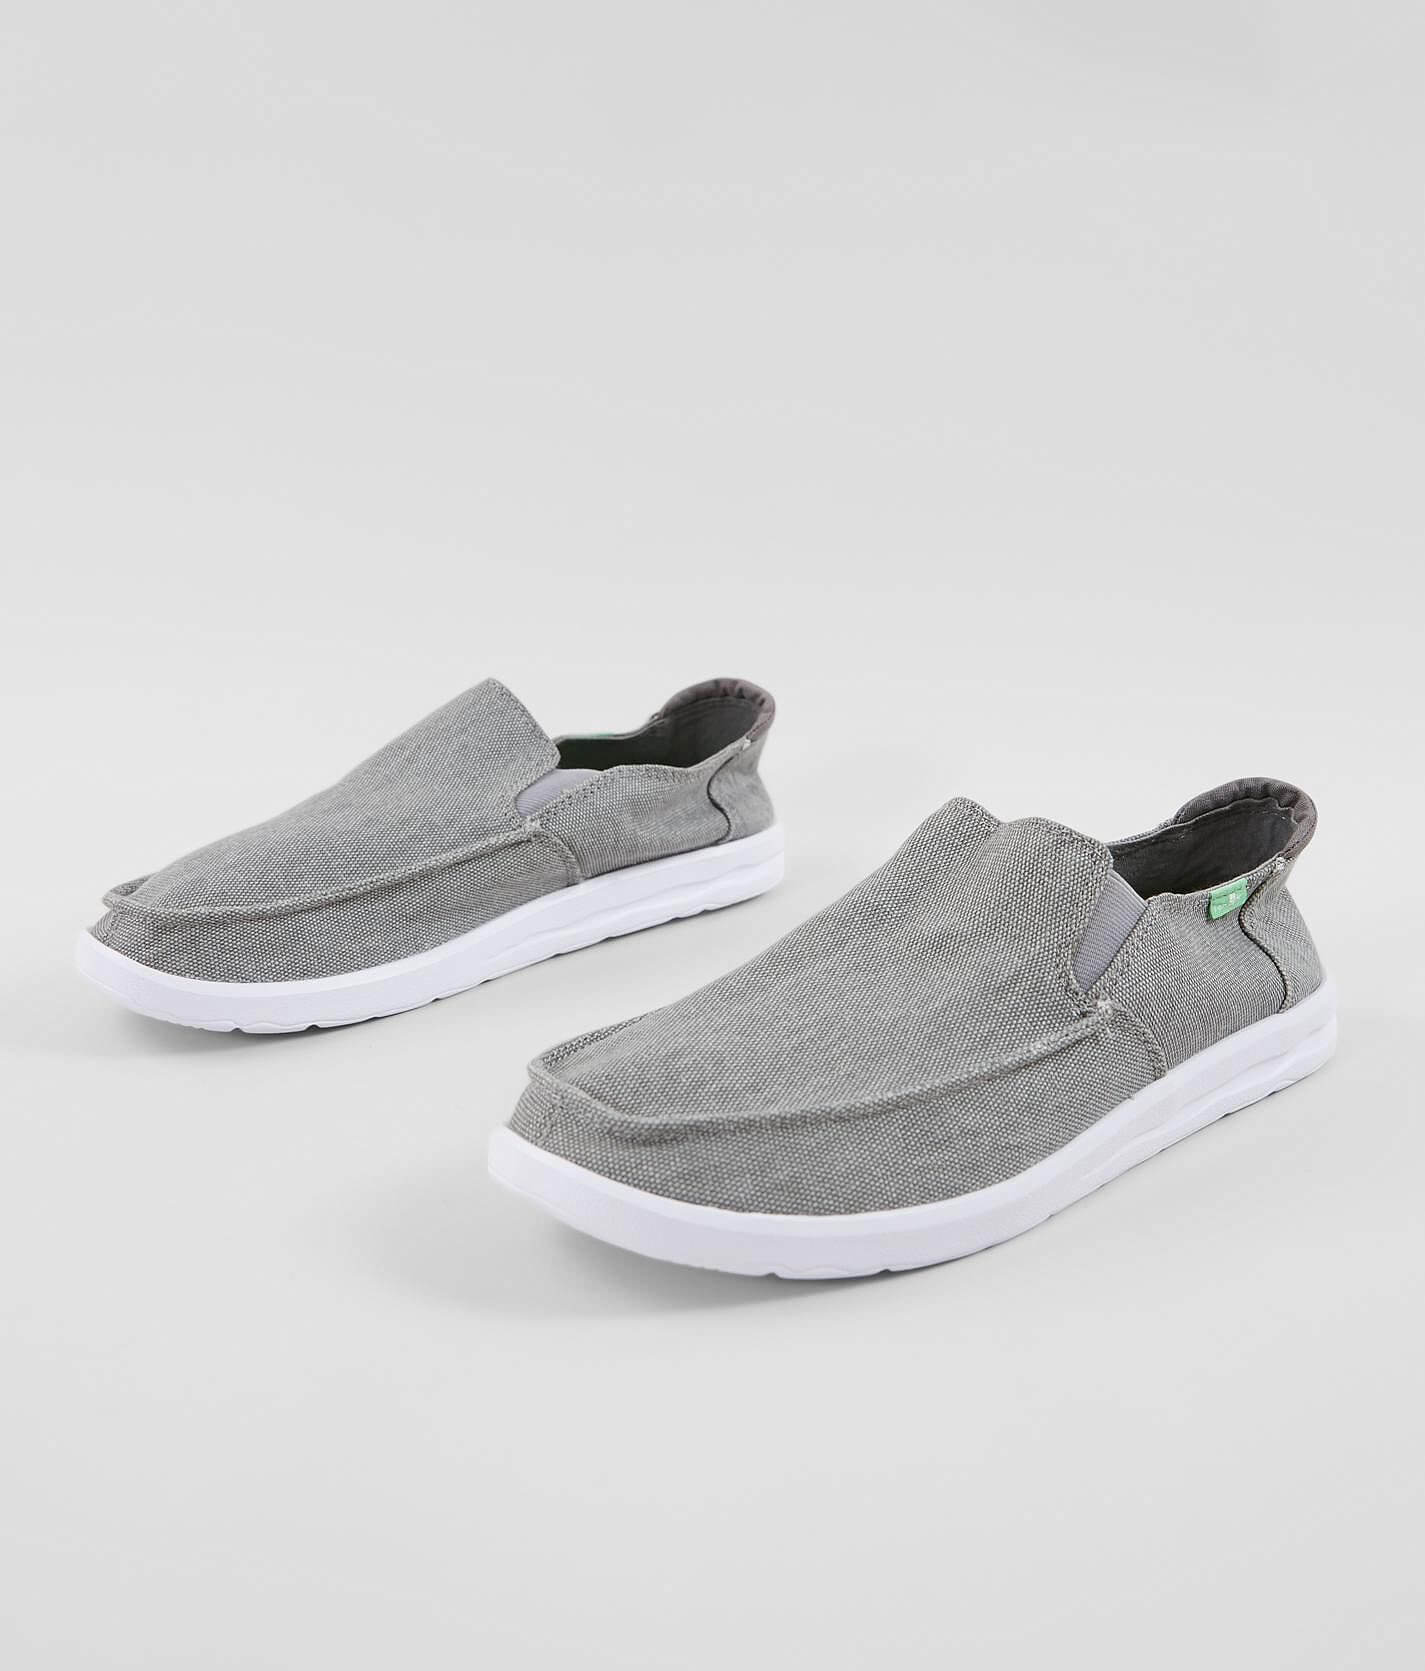 Sanuk Hi Five Canvas Shoe - Men's Shoes in Grey